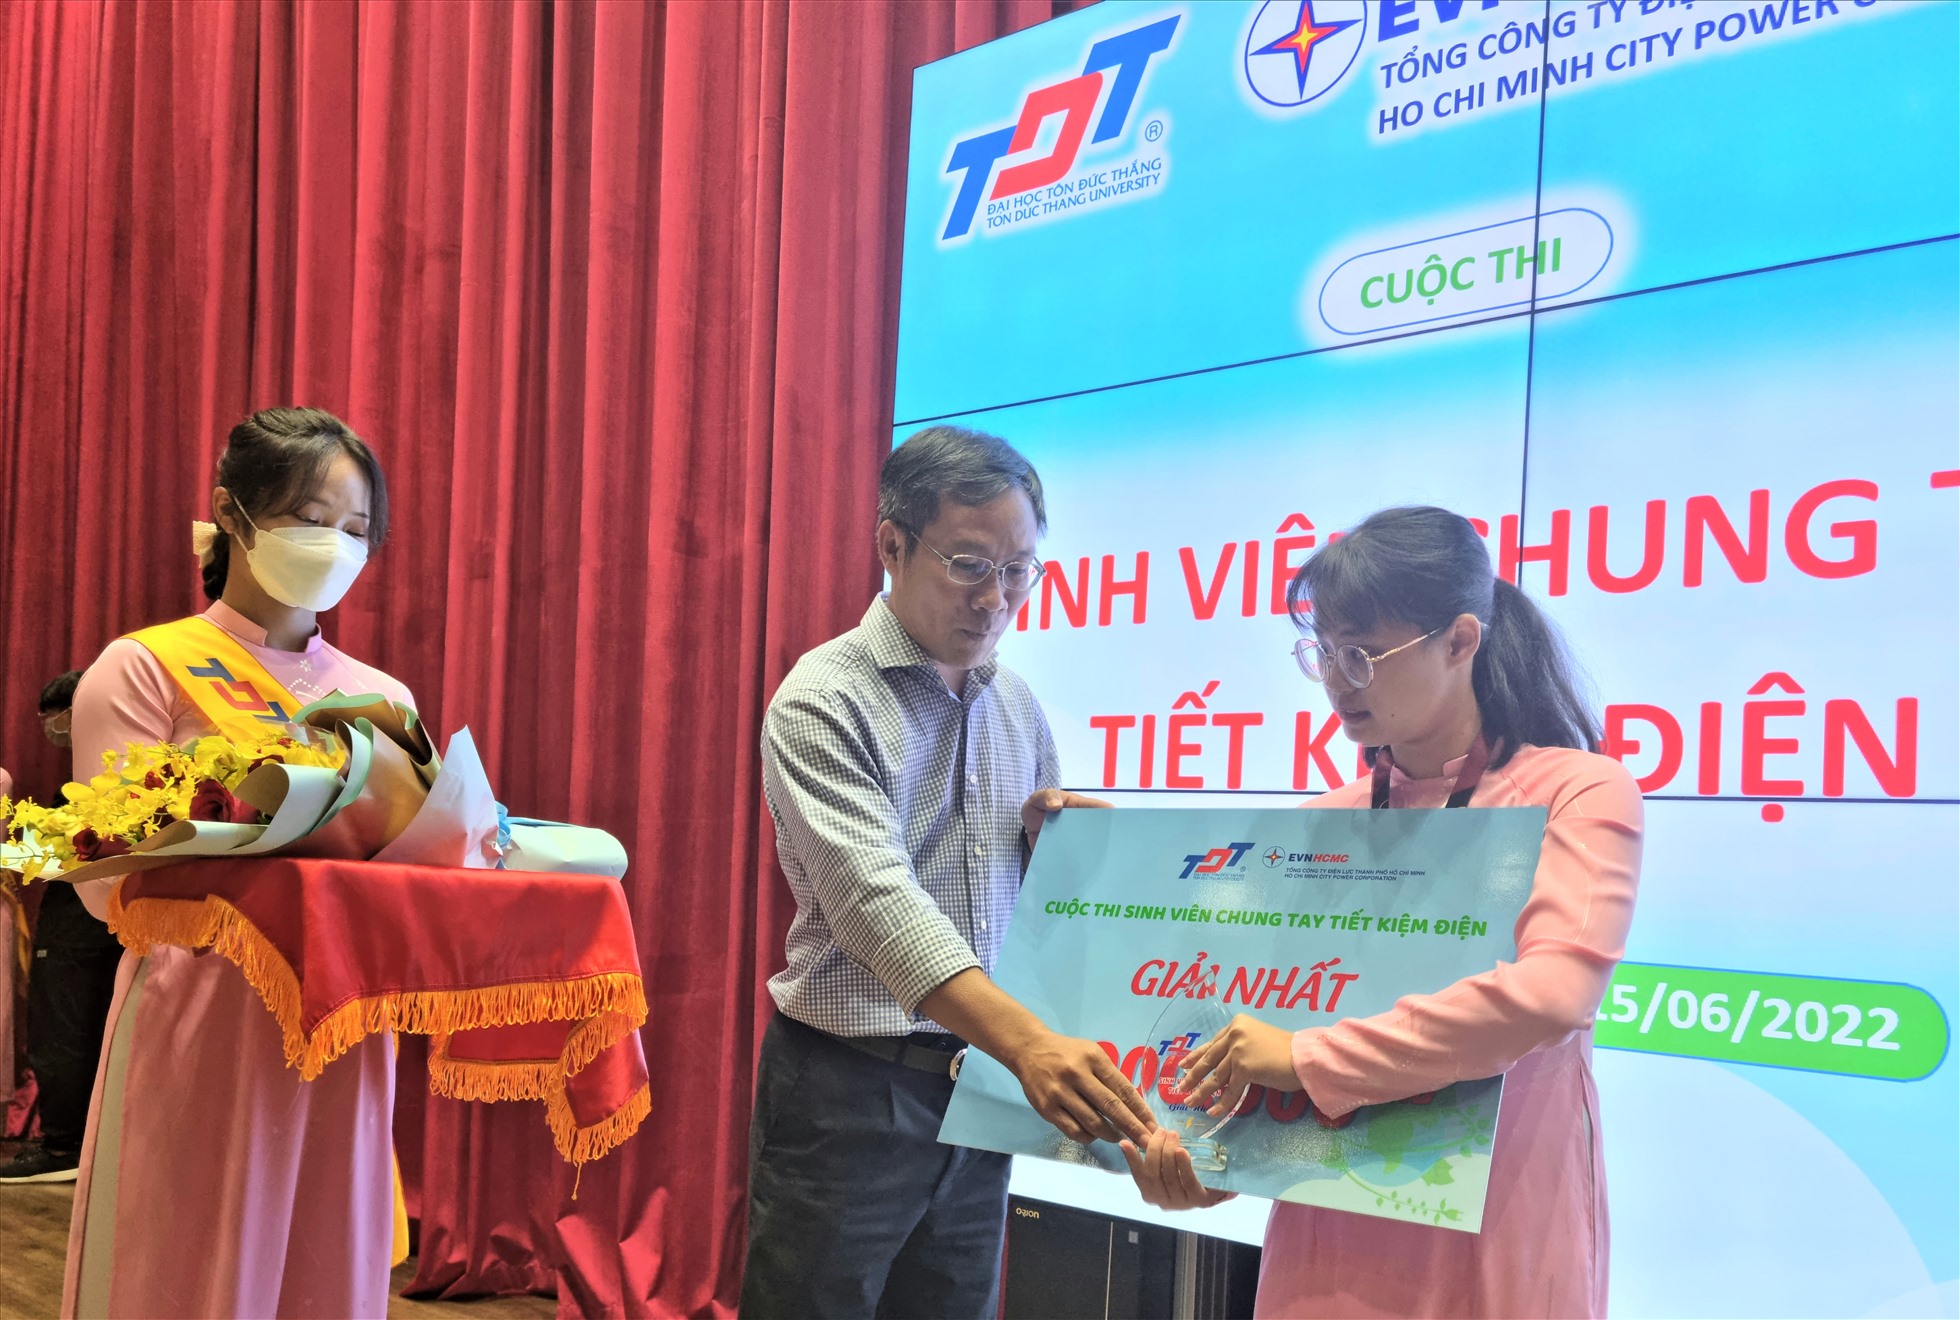 Ông Bùi Trung Kiên trao giải Nhất cho sinh viên Trường đại học Tôn Đức Thắng trong cuộc thi tiết kiêm điện trong sinh viên. Ảnh: Nam Dương